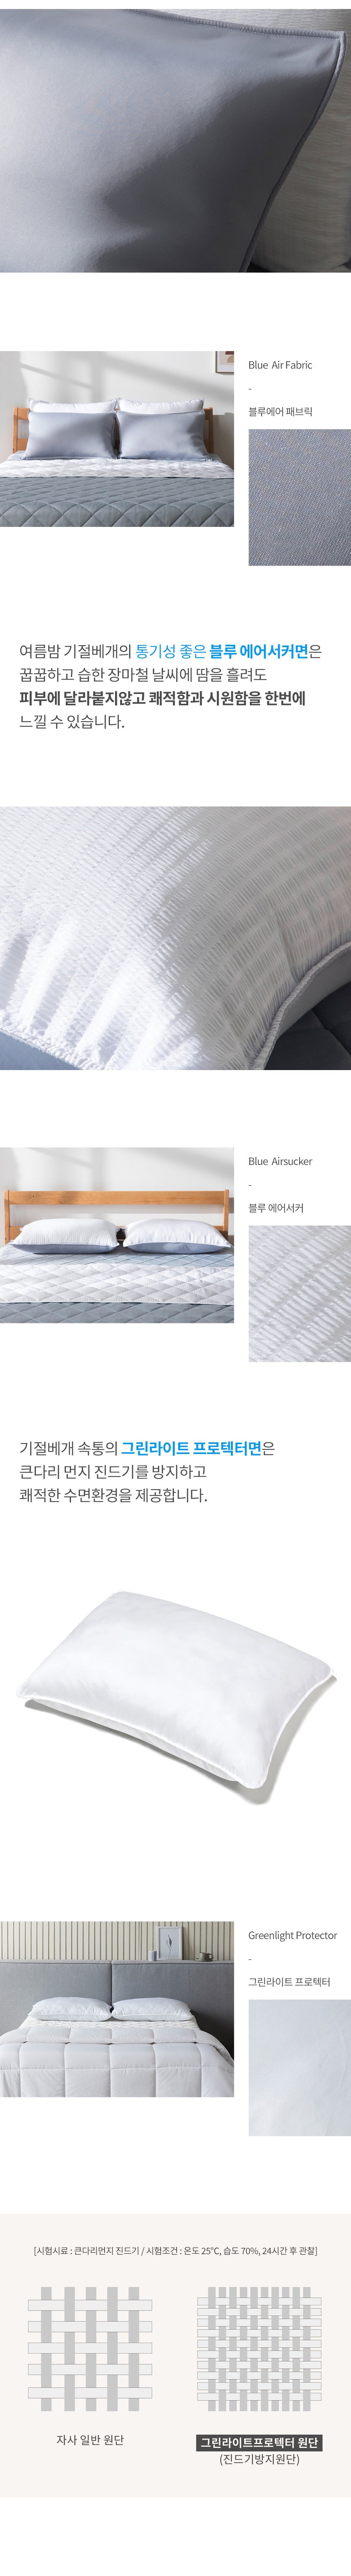 홈랩 여름밤 기절 베개 Cooling Kigeol Pillow kigeol bedding for Summer